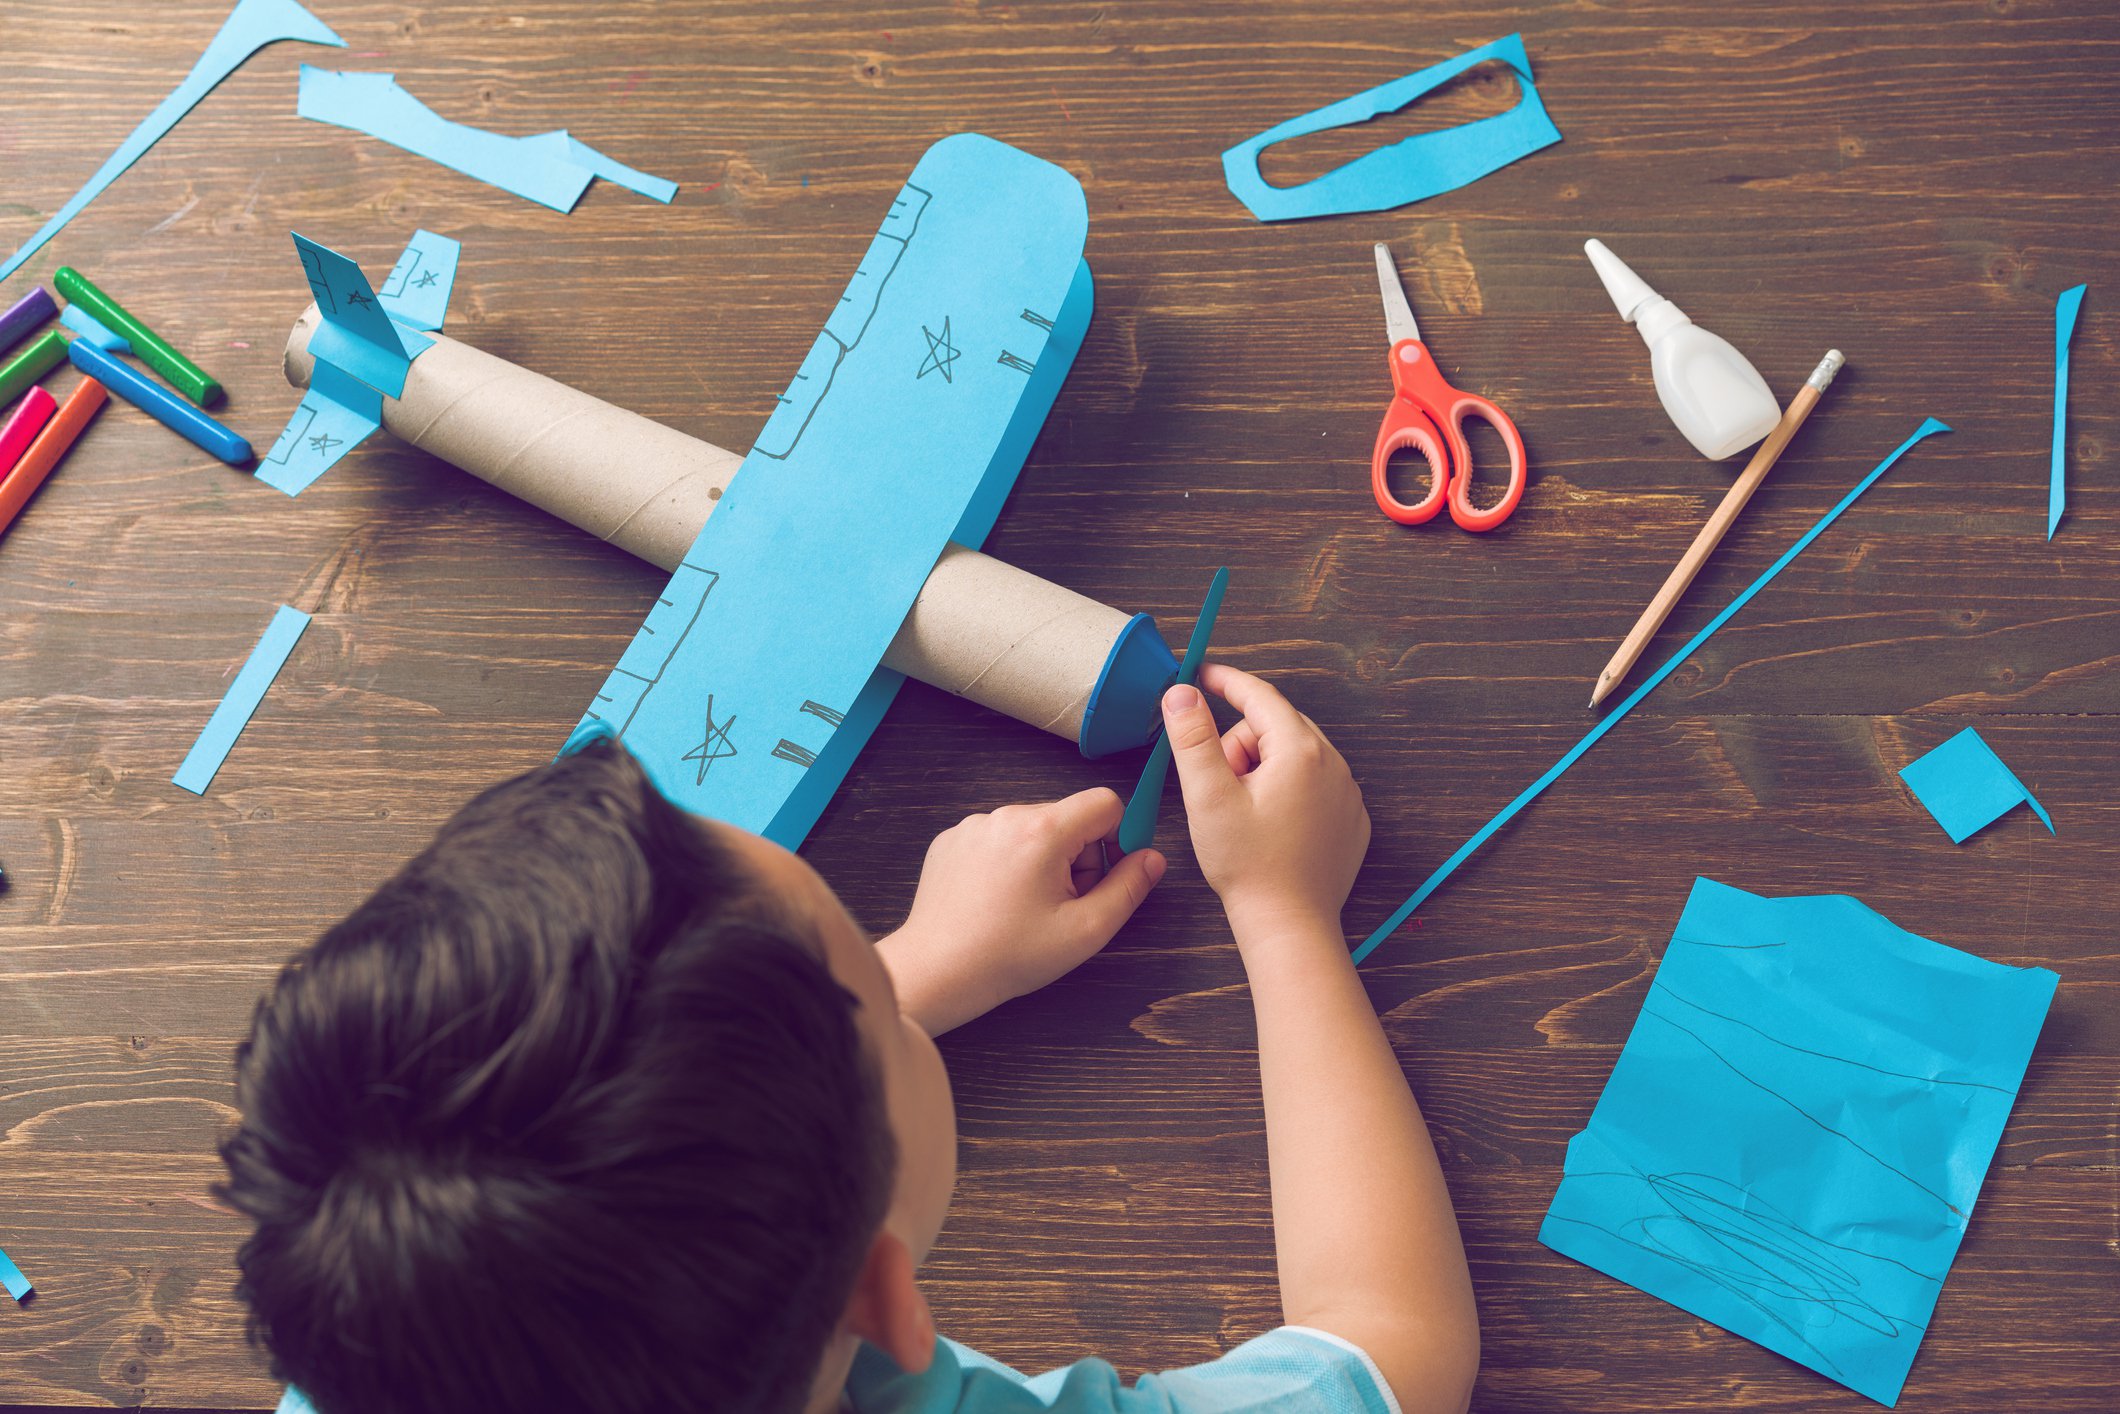 Kitchen Floor Crafts: Toddler Airplane Activity Binder